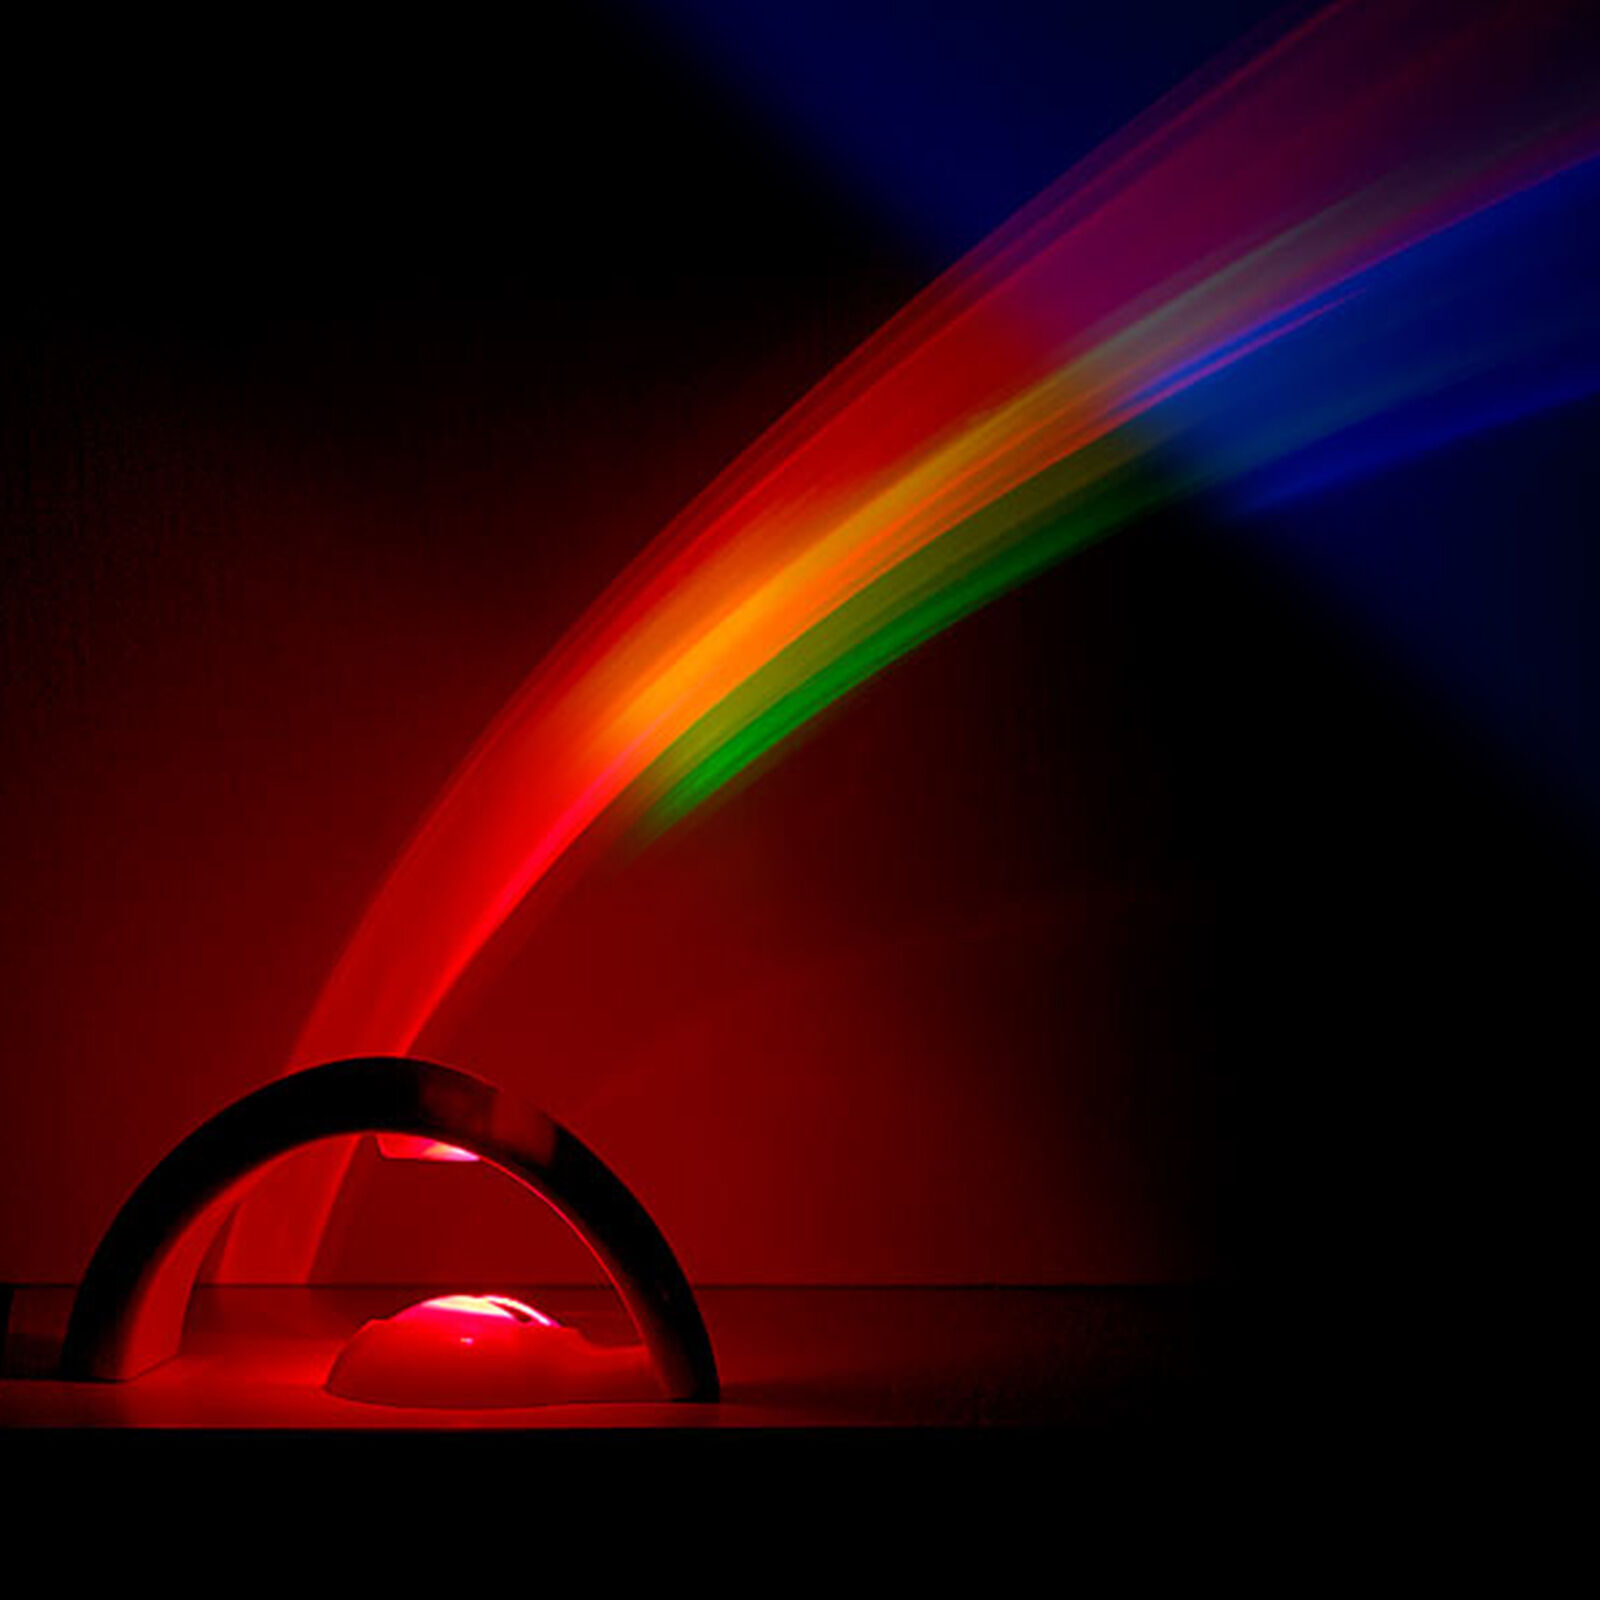 Regenbogenleuchte LED Regenbogen Lampe Regenbogen Projektor